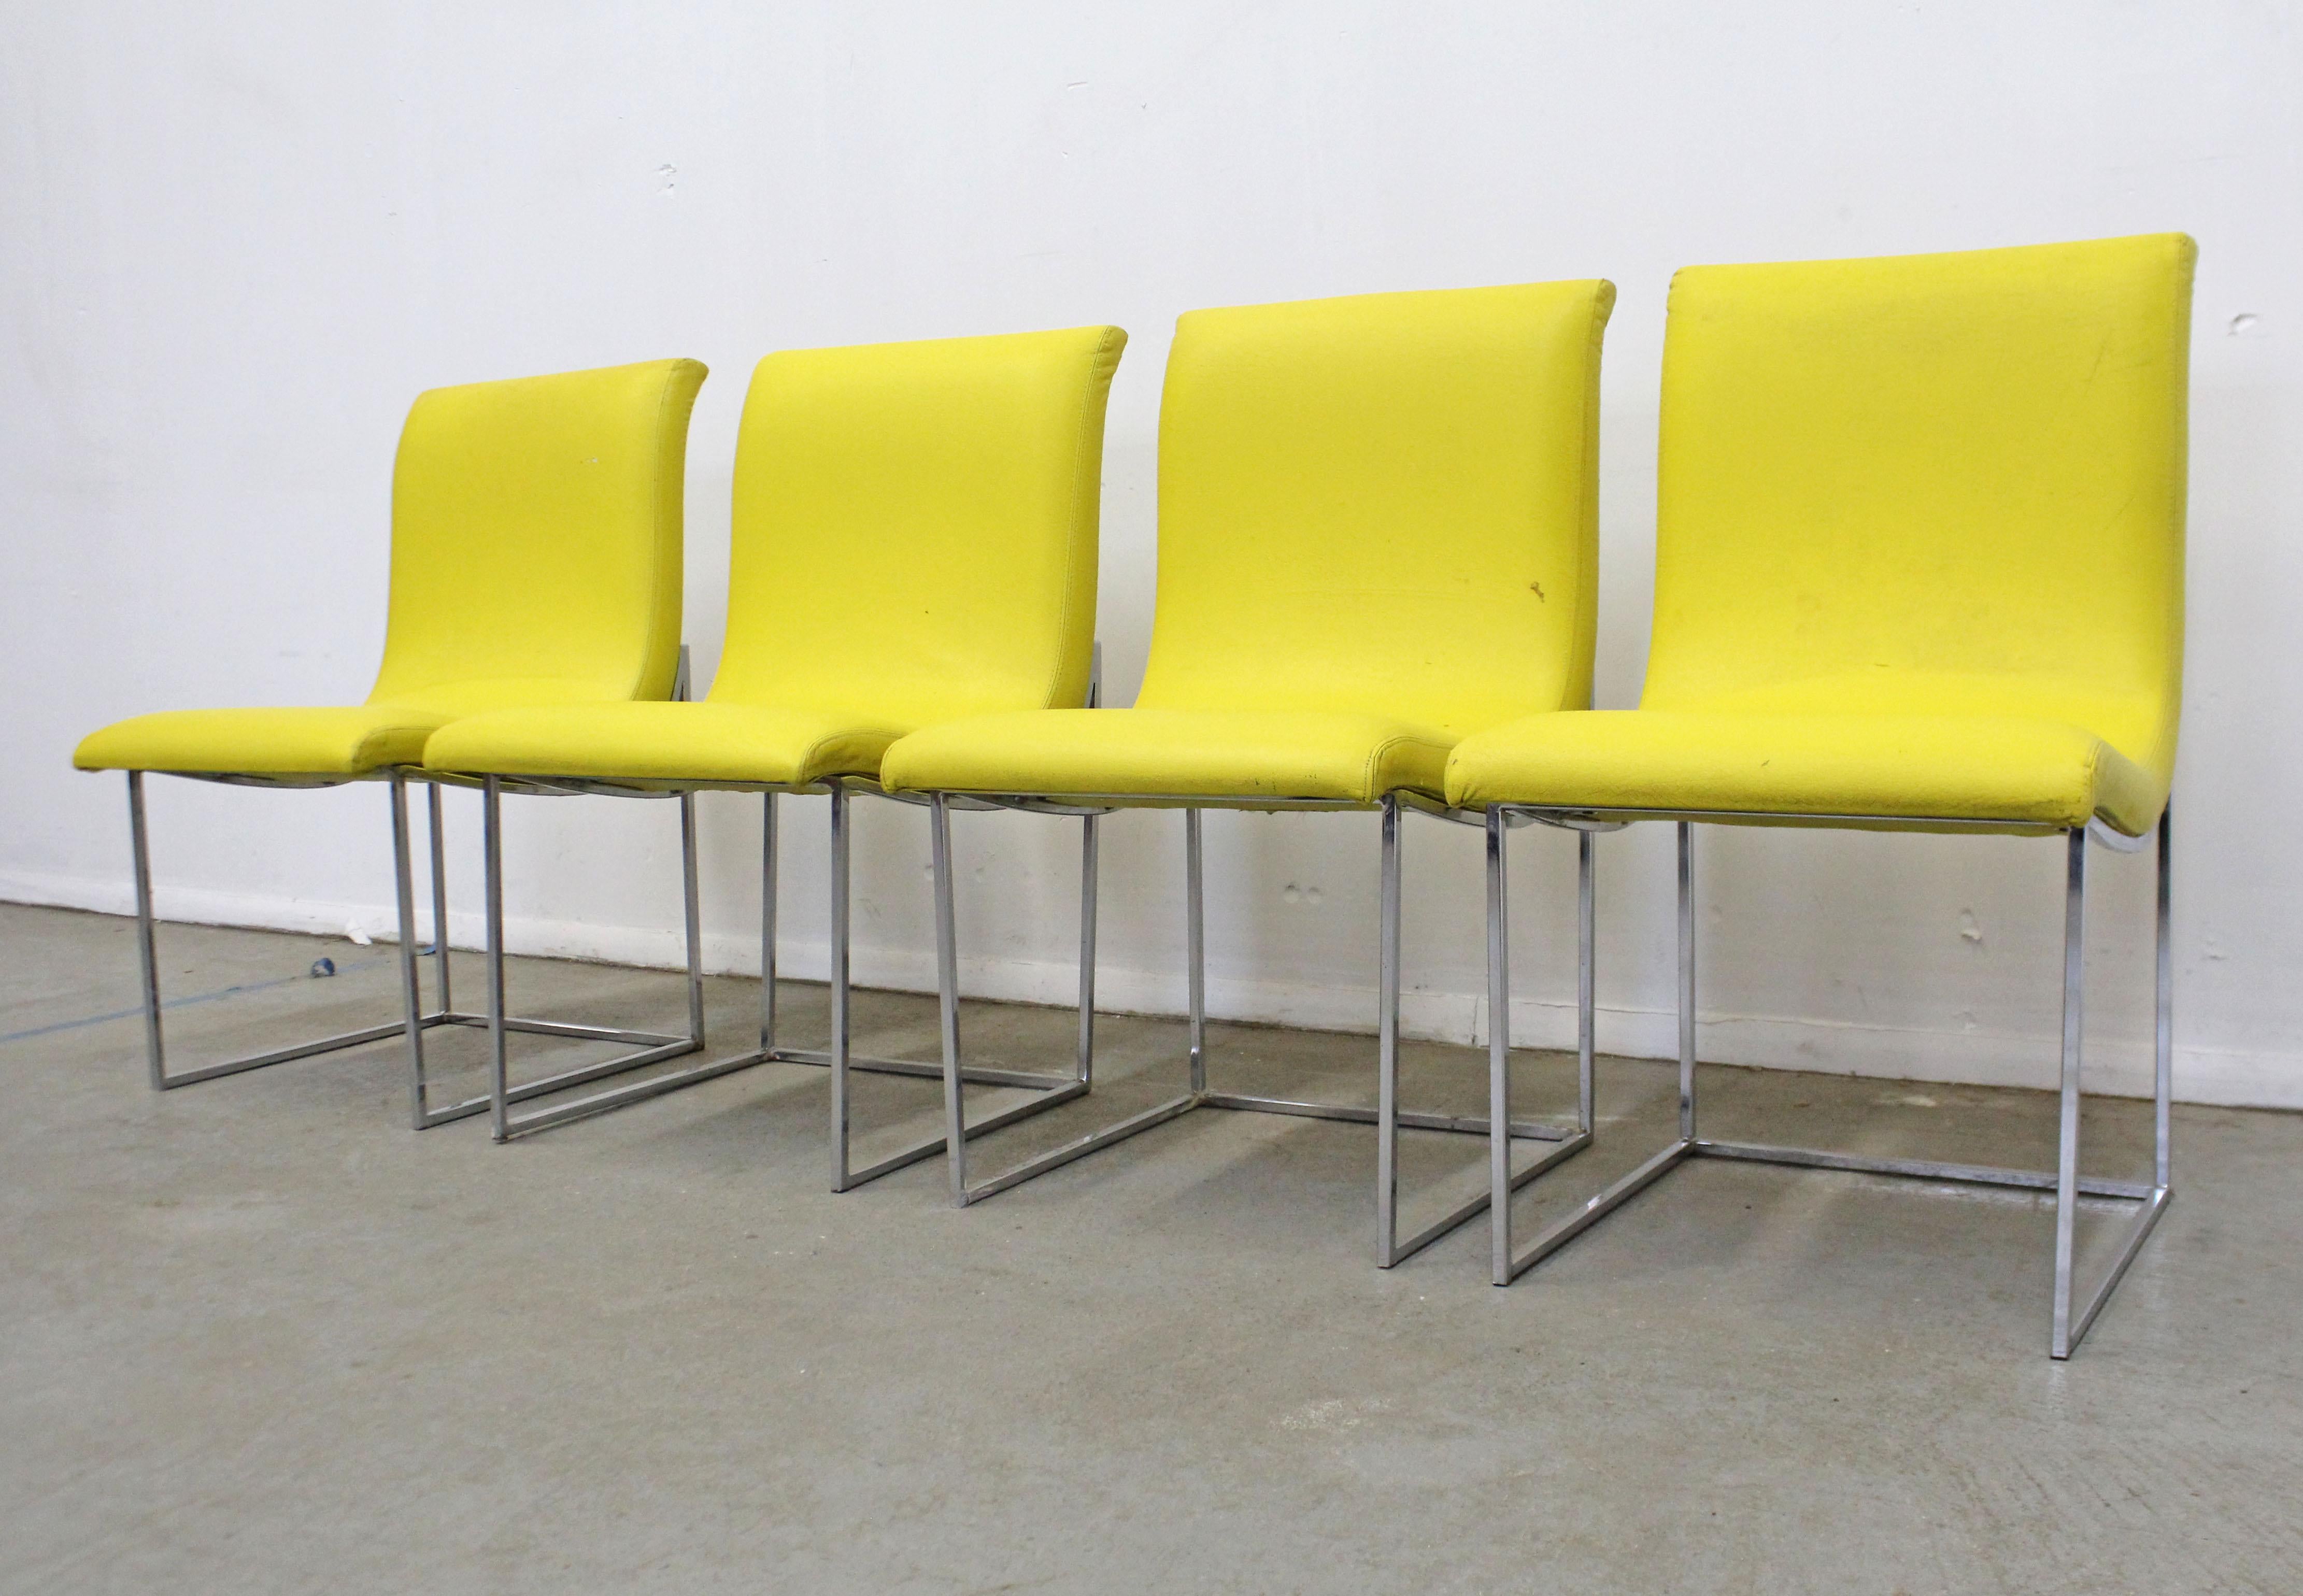 Cet ensemble de 4 chaises de salle à manger de style moderne du milieu du siècle dernier a été conçu par Milo Baughman pour Thayer Coggin. Comprend quatre chaises latérales fabriquées avec des bases chromées et un revêtement en vinyle jaune. Ils